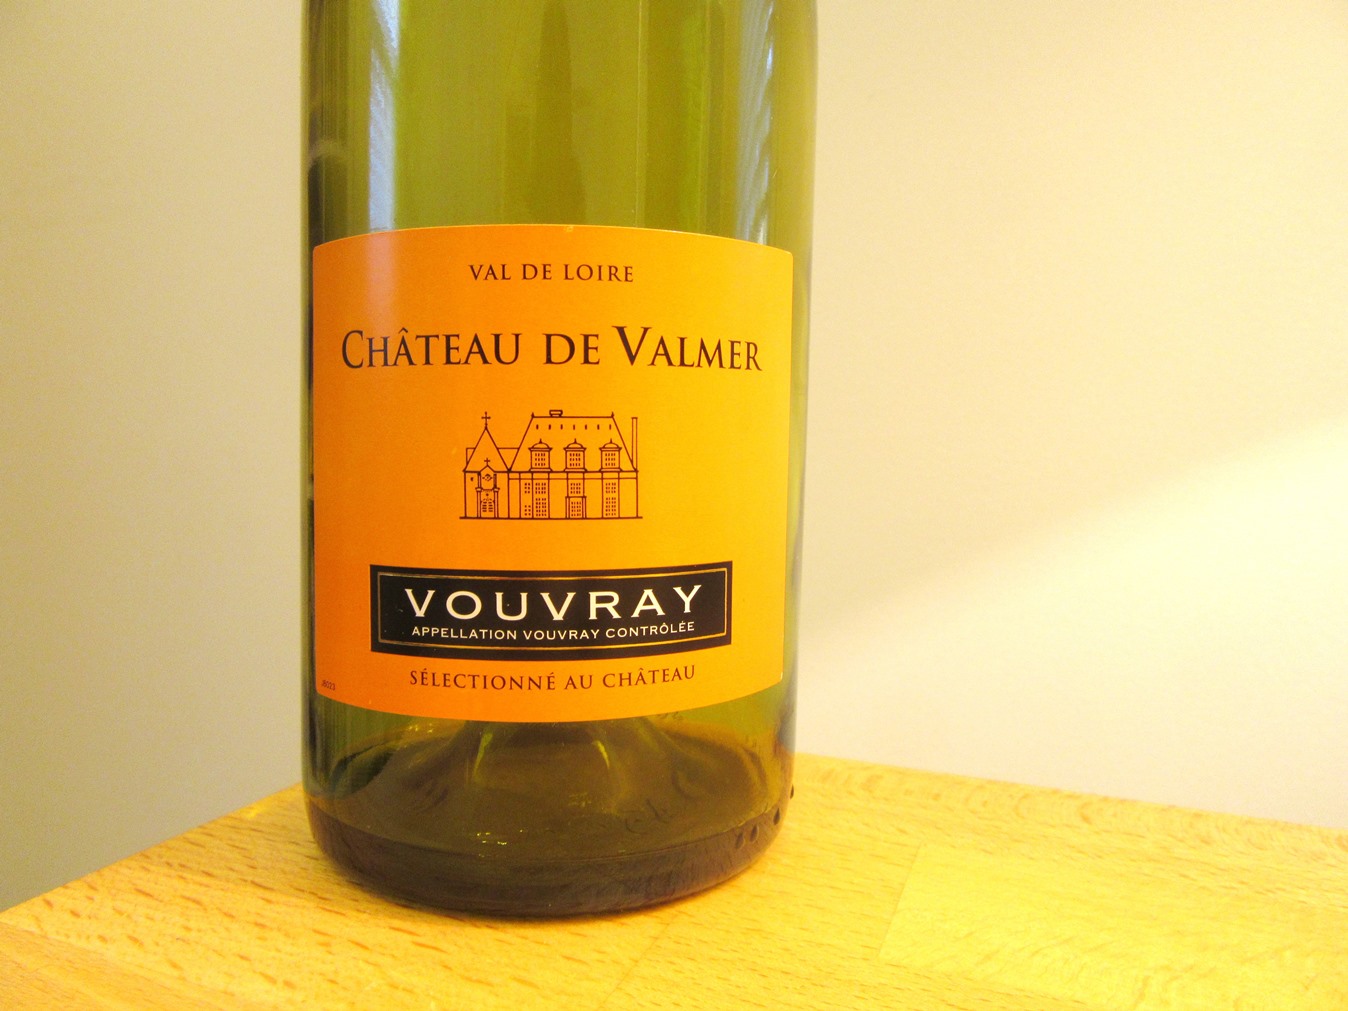 Photo Credit: Wine Casual, Château de Valmer, Vouvray 2014, Loire, France